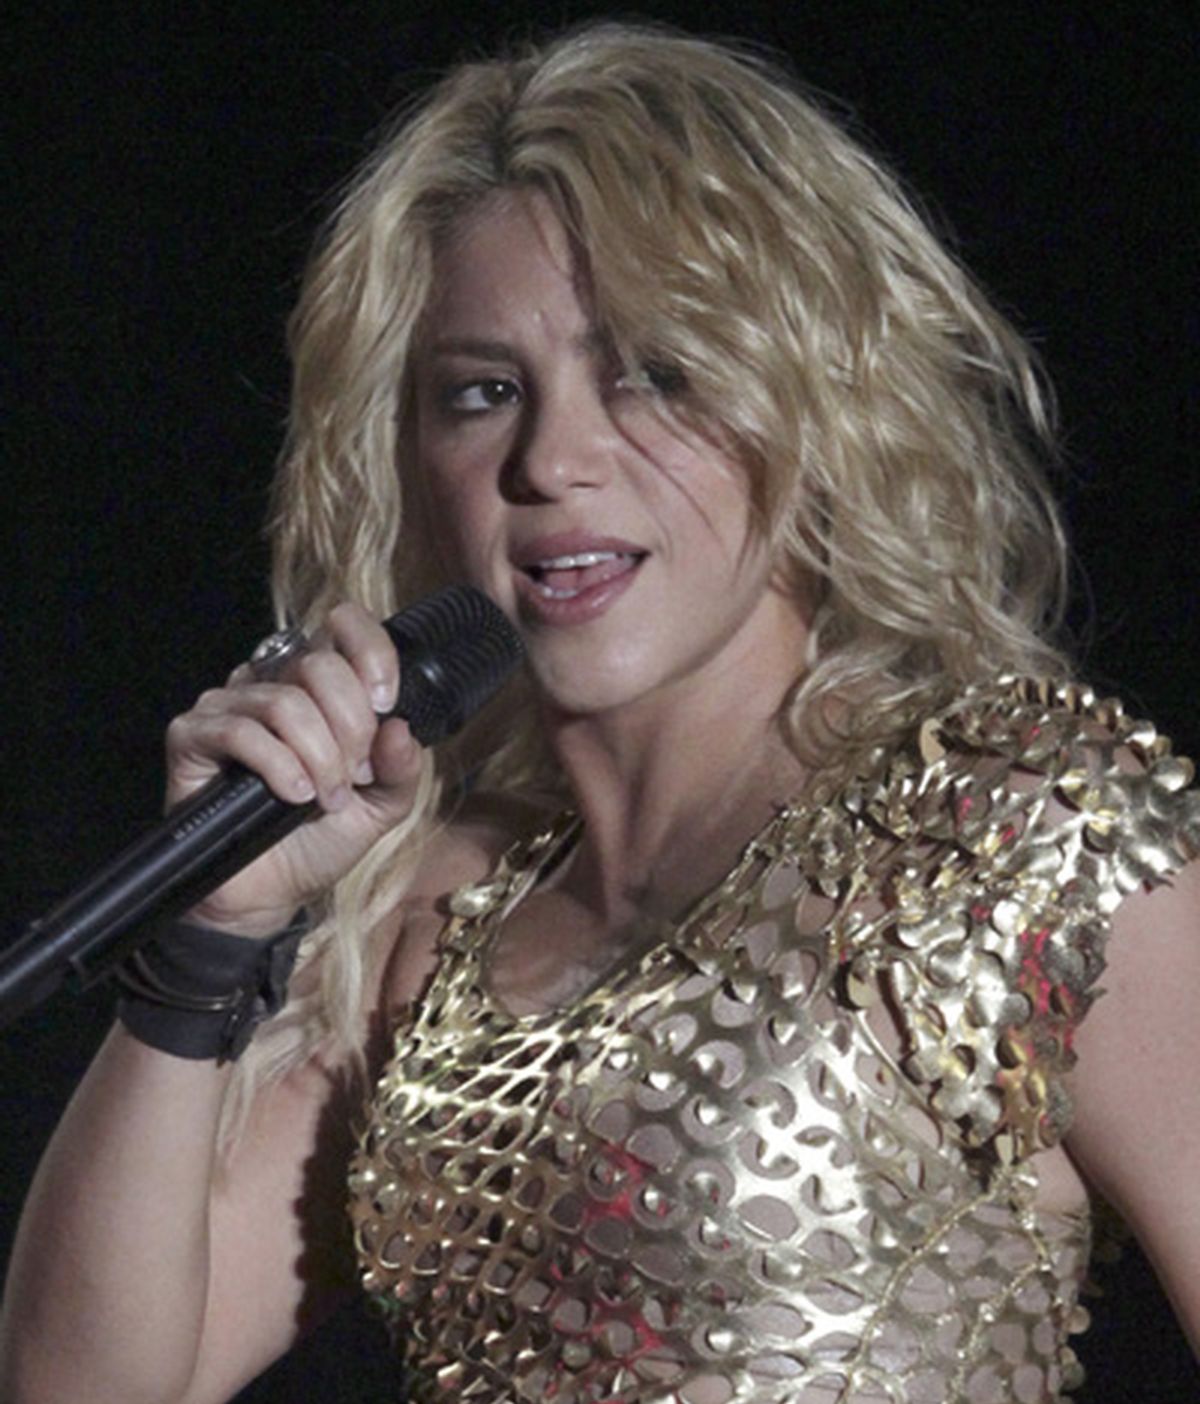 La cantante se llevó un buen susto en el concierto de Tijuana. Foto: Reuters